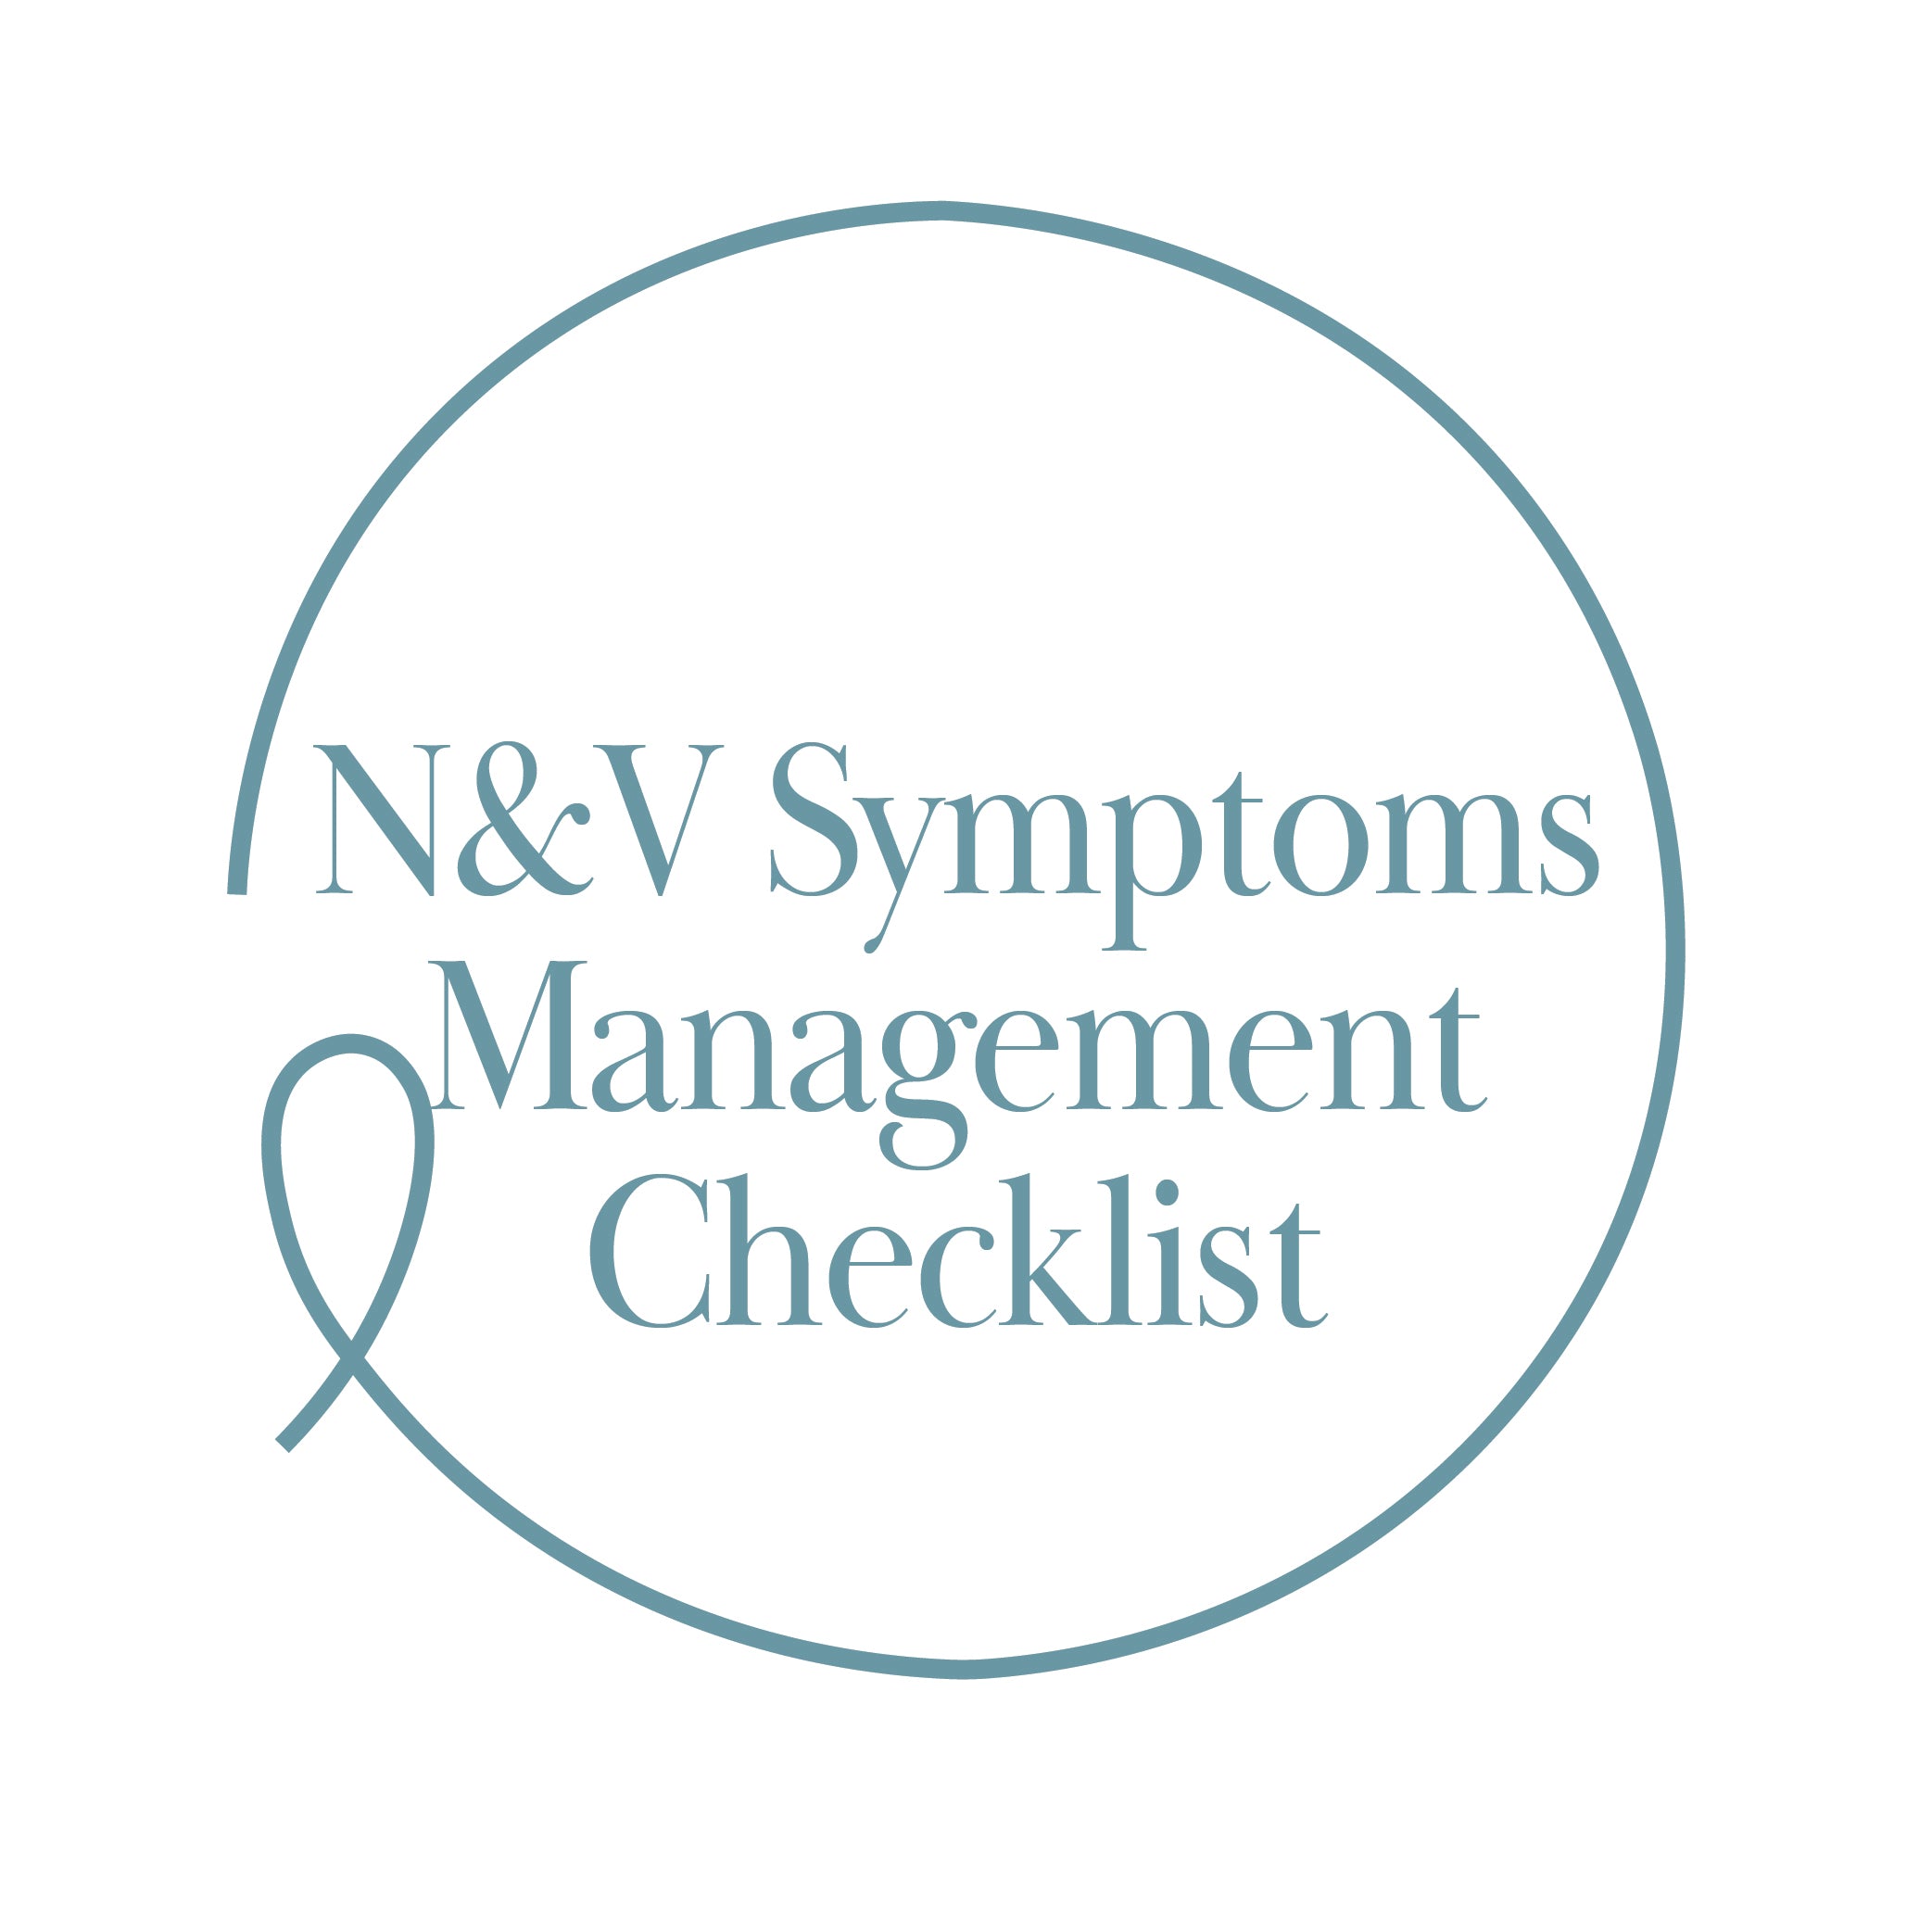 N&V Symptoms Management Checklist